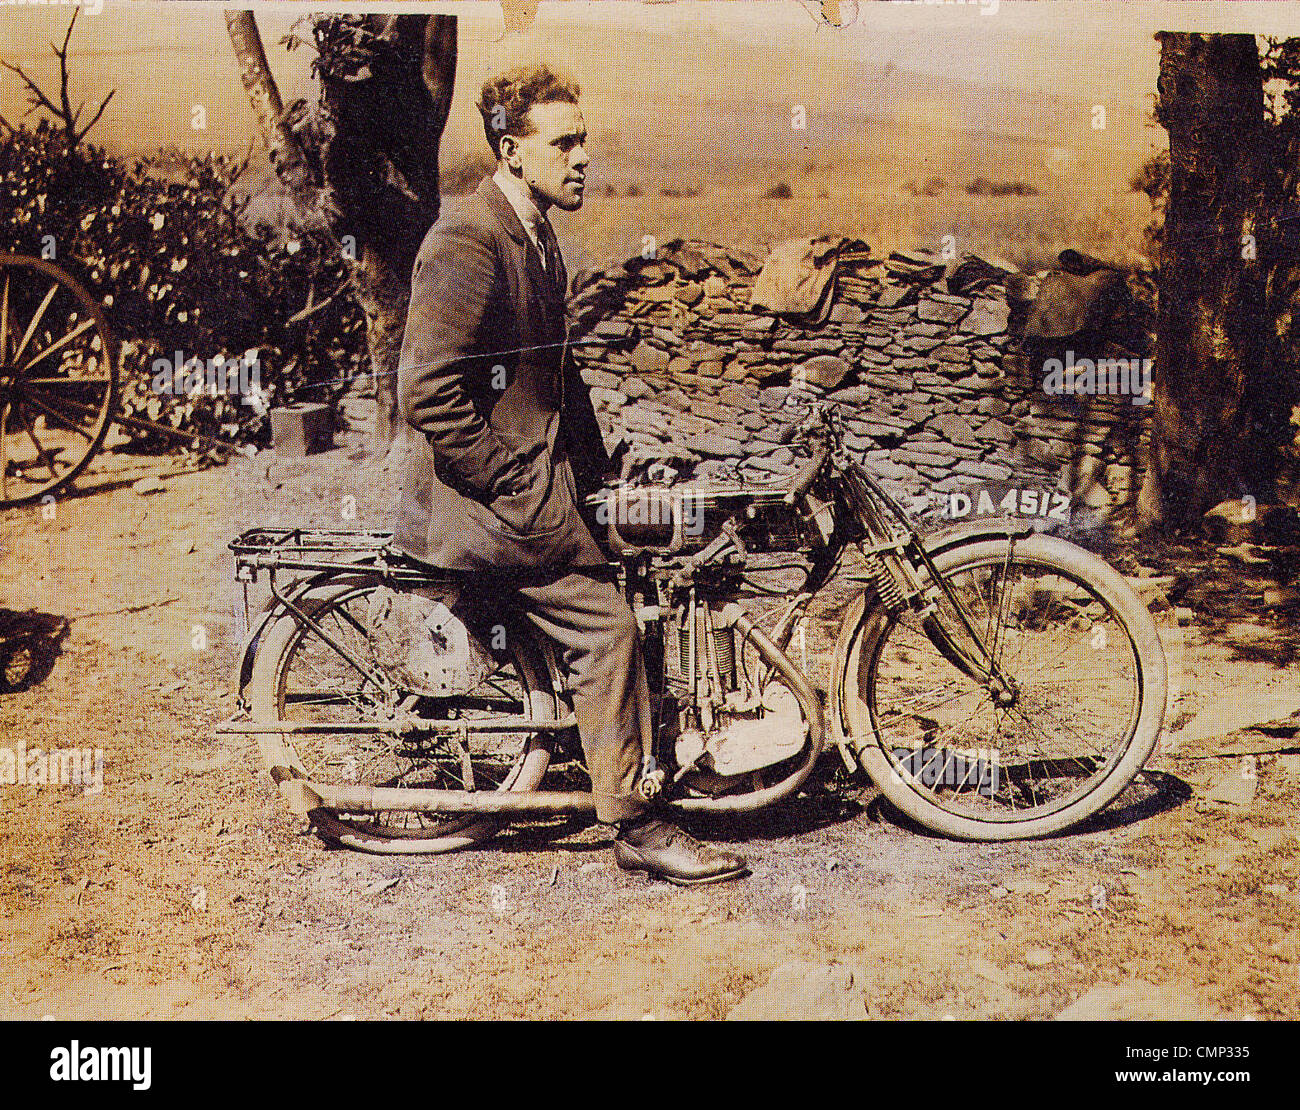 Carrera de motos Rider (1923), A. J. Stevens & Company Ltd., Wolverhampton, de fines de siglo XX%. Una fotografía de 1923 de 'Motorcycle Foto de stock